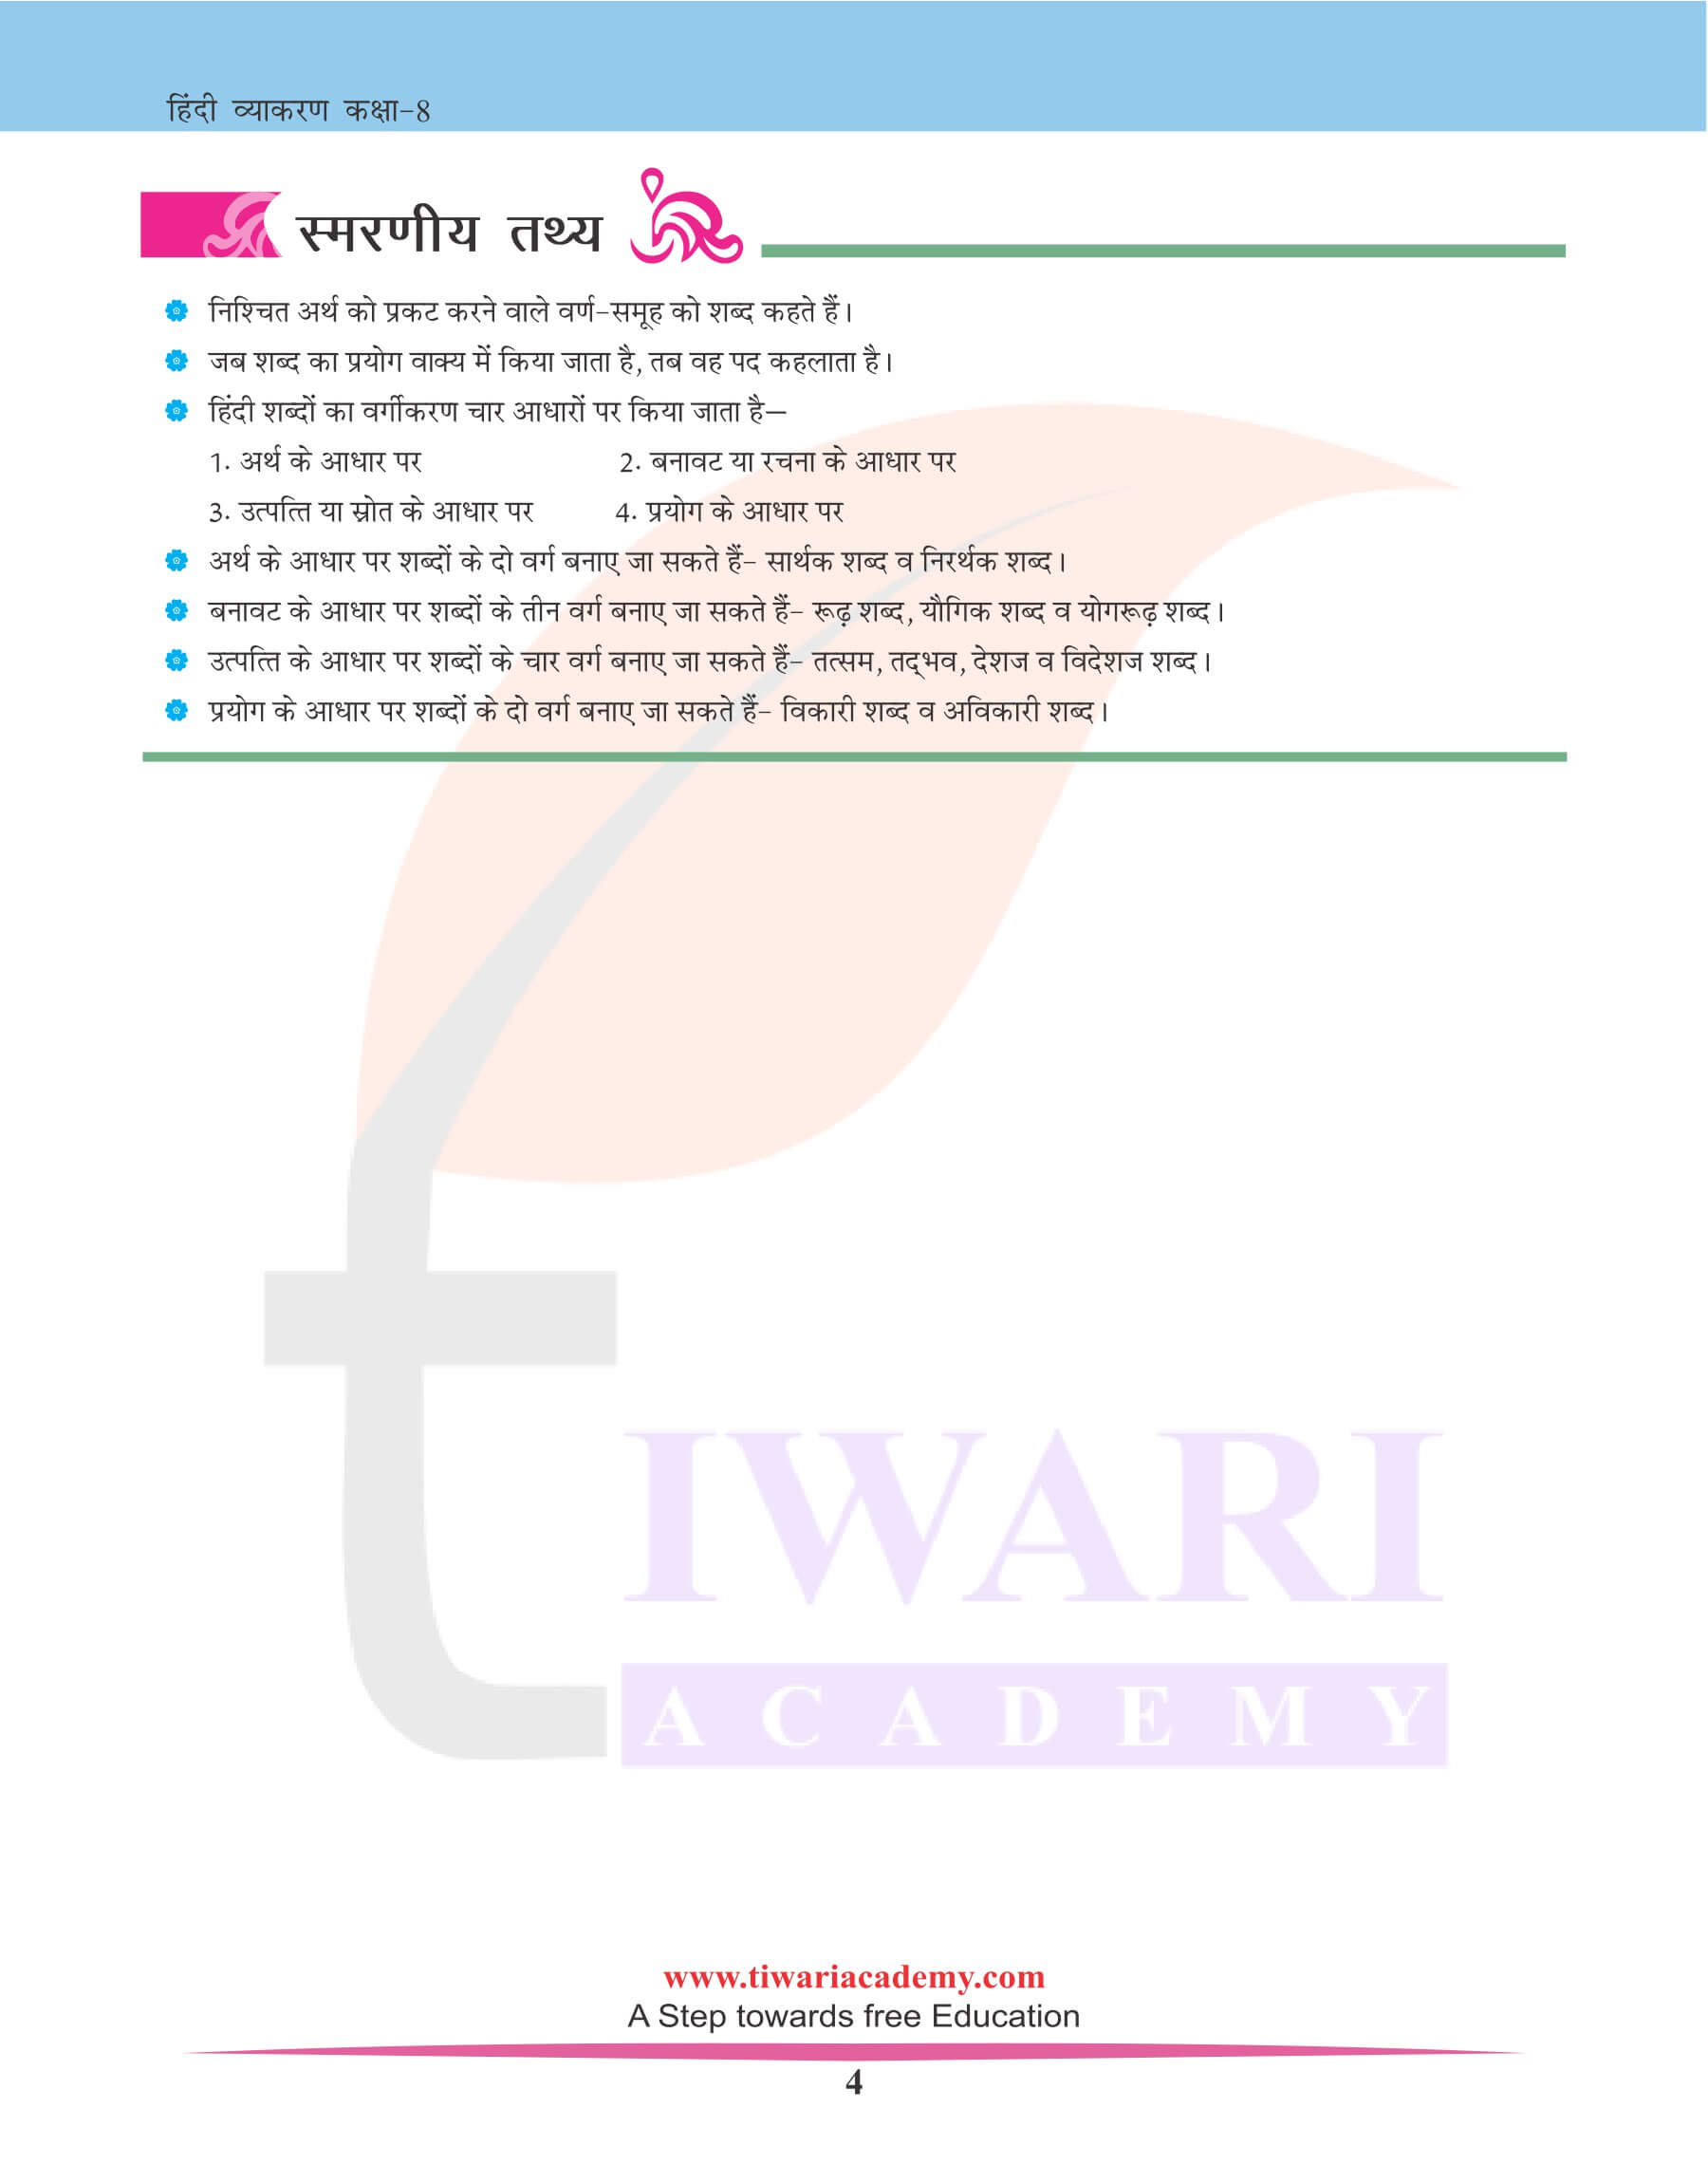 कक्षा 8 हिंदी व्याकरण अध्याय 3 शब्द विचार के उदाहरण